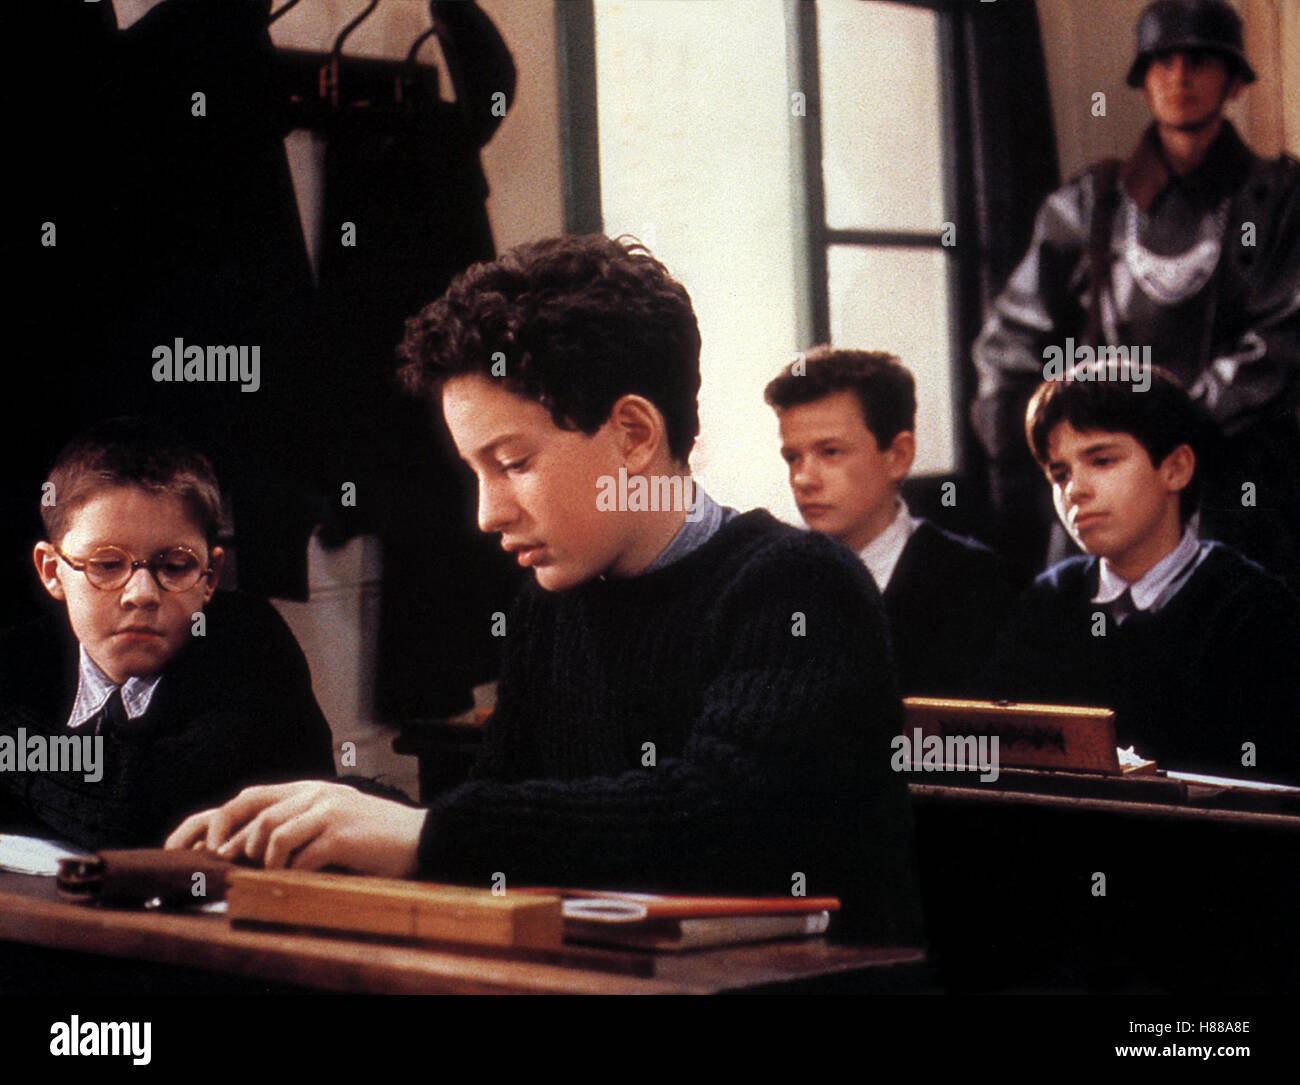 Auf Wiedersehen, Kinder, (AU REVOIR LES ENFANTS) F 1987, Regie: Louis Malle, GASPARD MANESSE, Stichwort: Schüler, Klassenzimmer Stock Photo